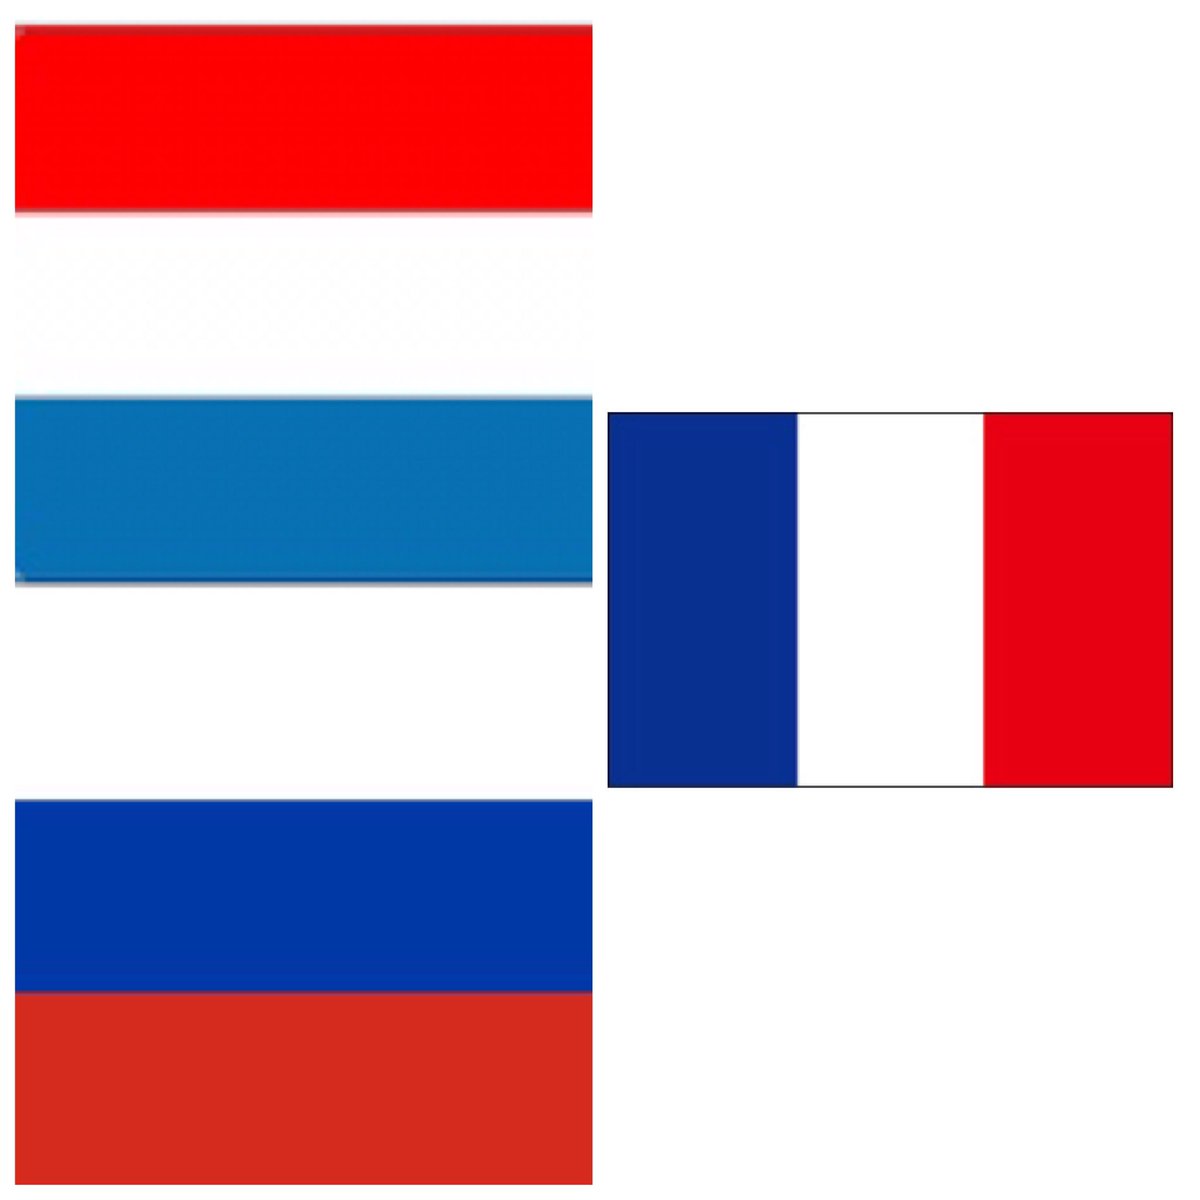 ぶーたろう 5 2ミスチル札幌ドーム参戦 フランス オランダ ロシアの国旗がややこしい件